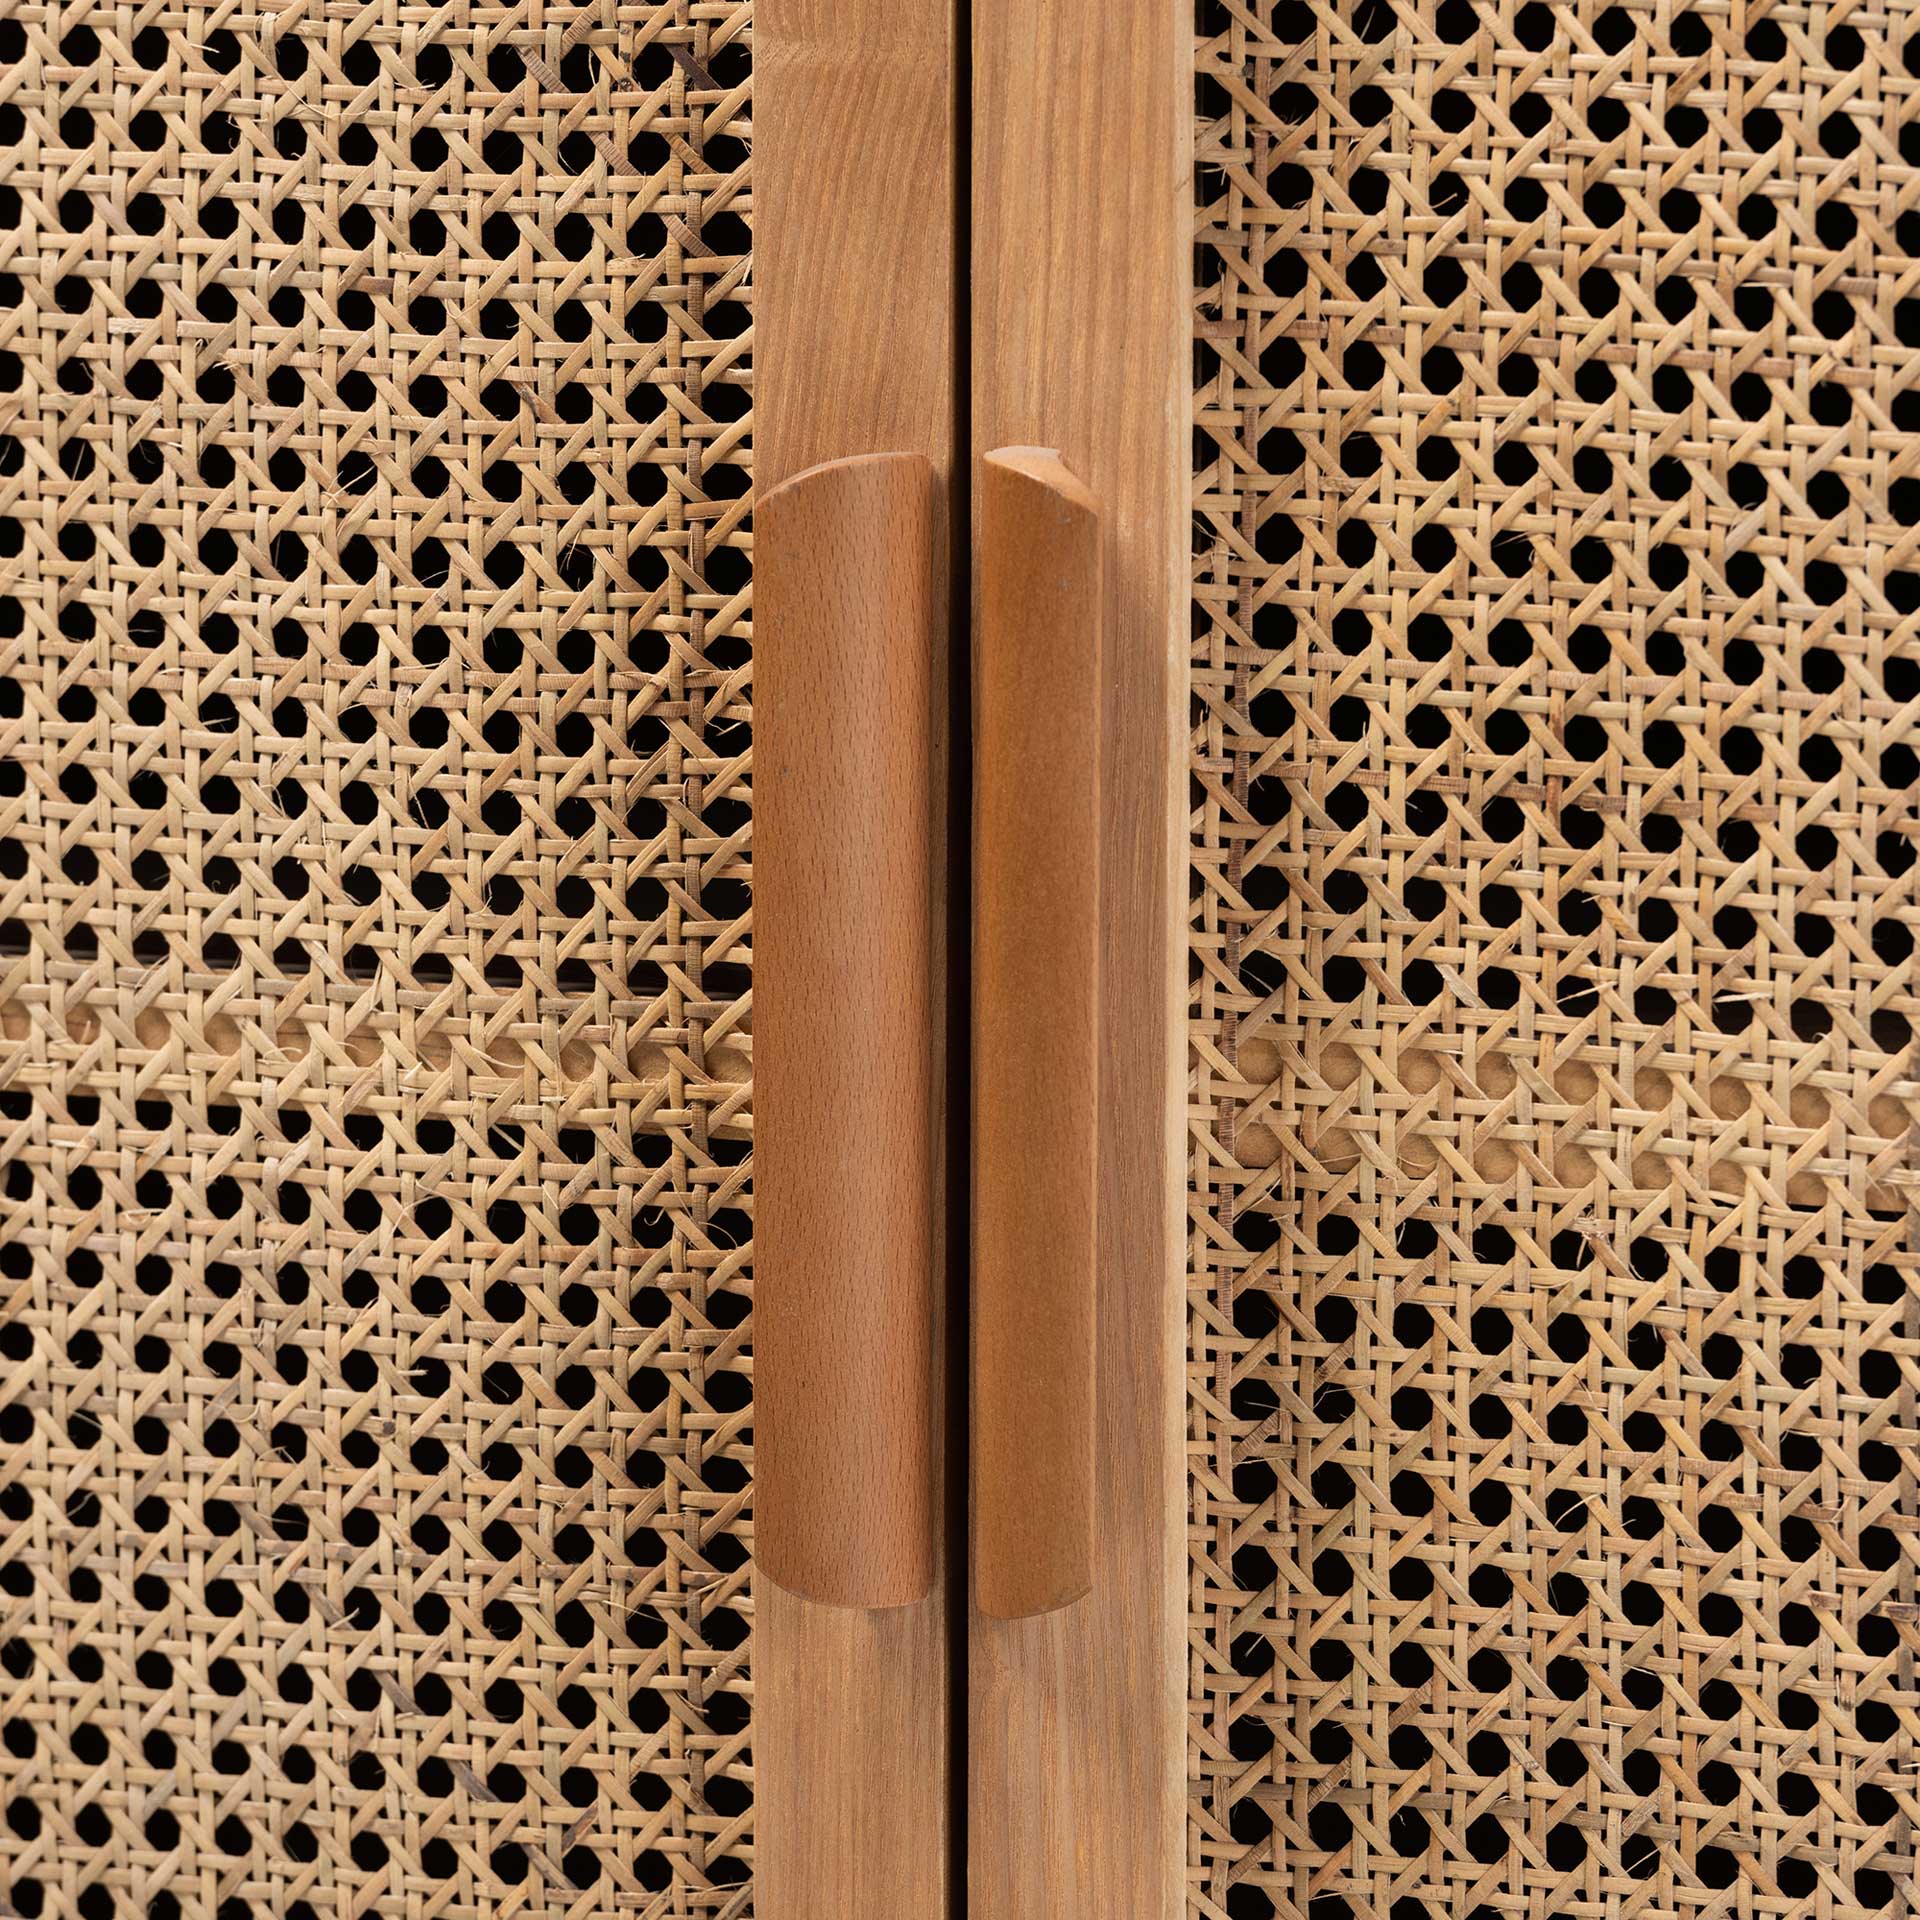 Alyssa 2-Door Storage Cabinet Medium Oak